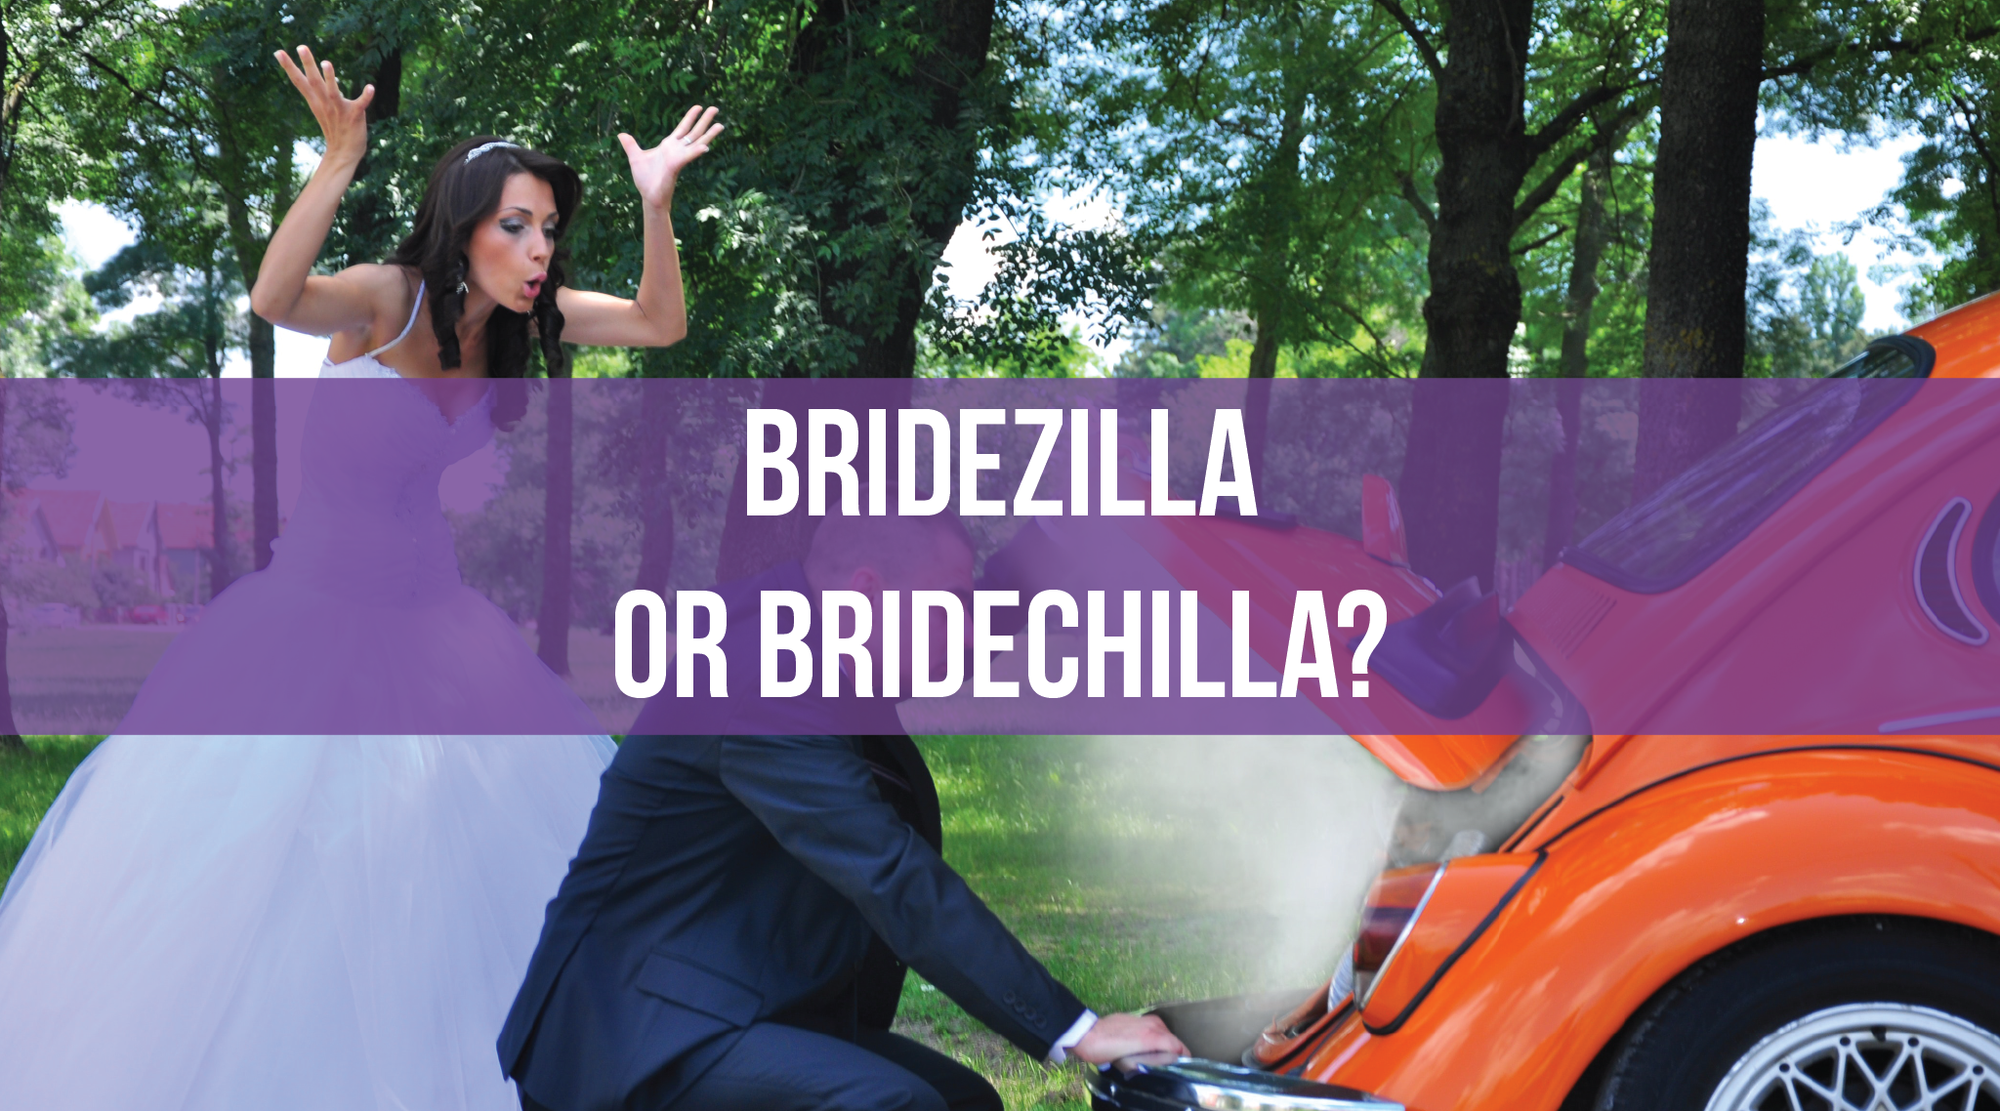 Bridezilla or Bridechilla?